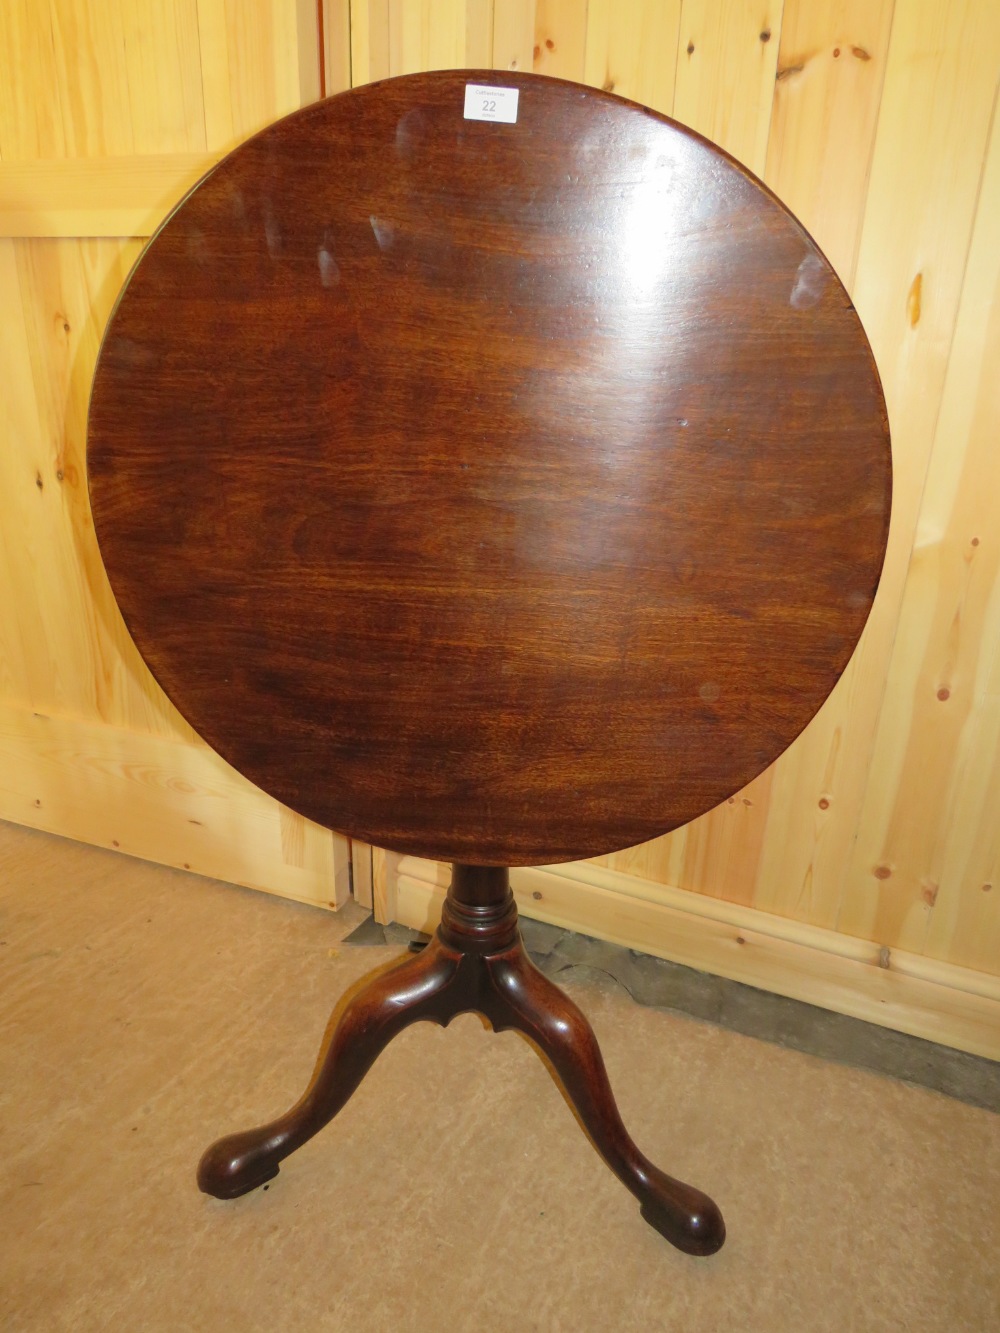 A 19TH CENTURY TILT-TOP PEDESTAL TRIPOD TABLE, H 70 cm, Dia. 68 cm